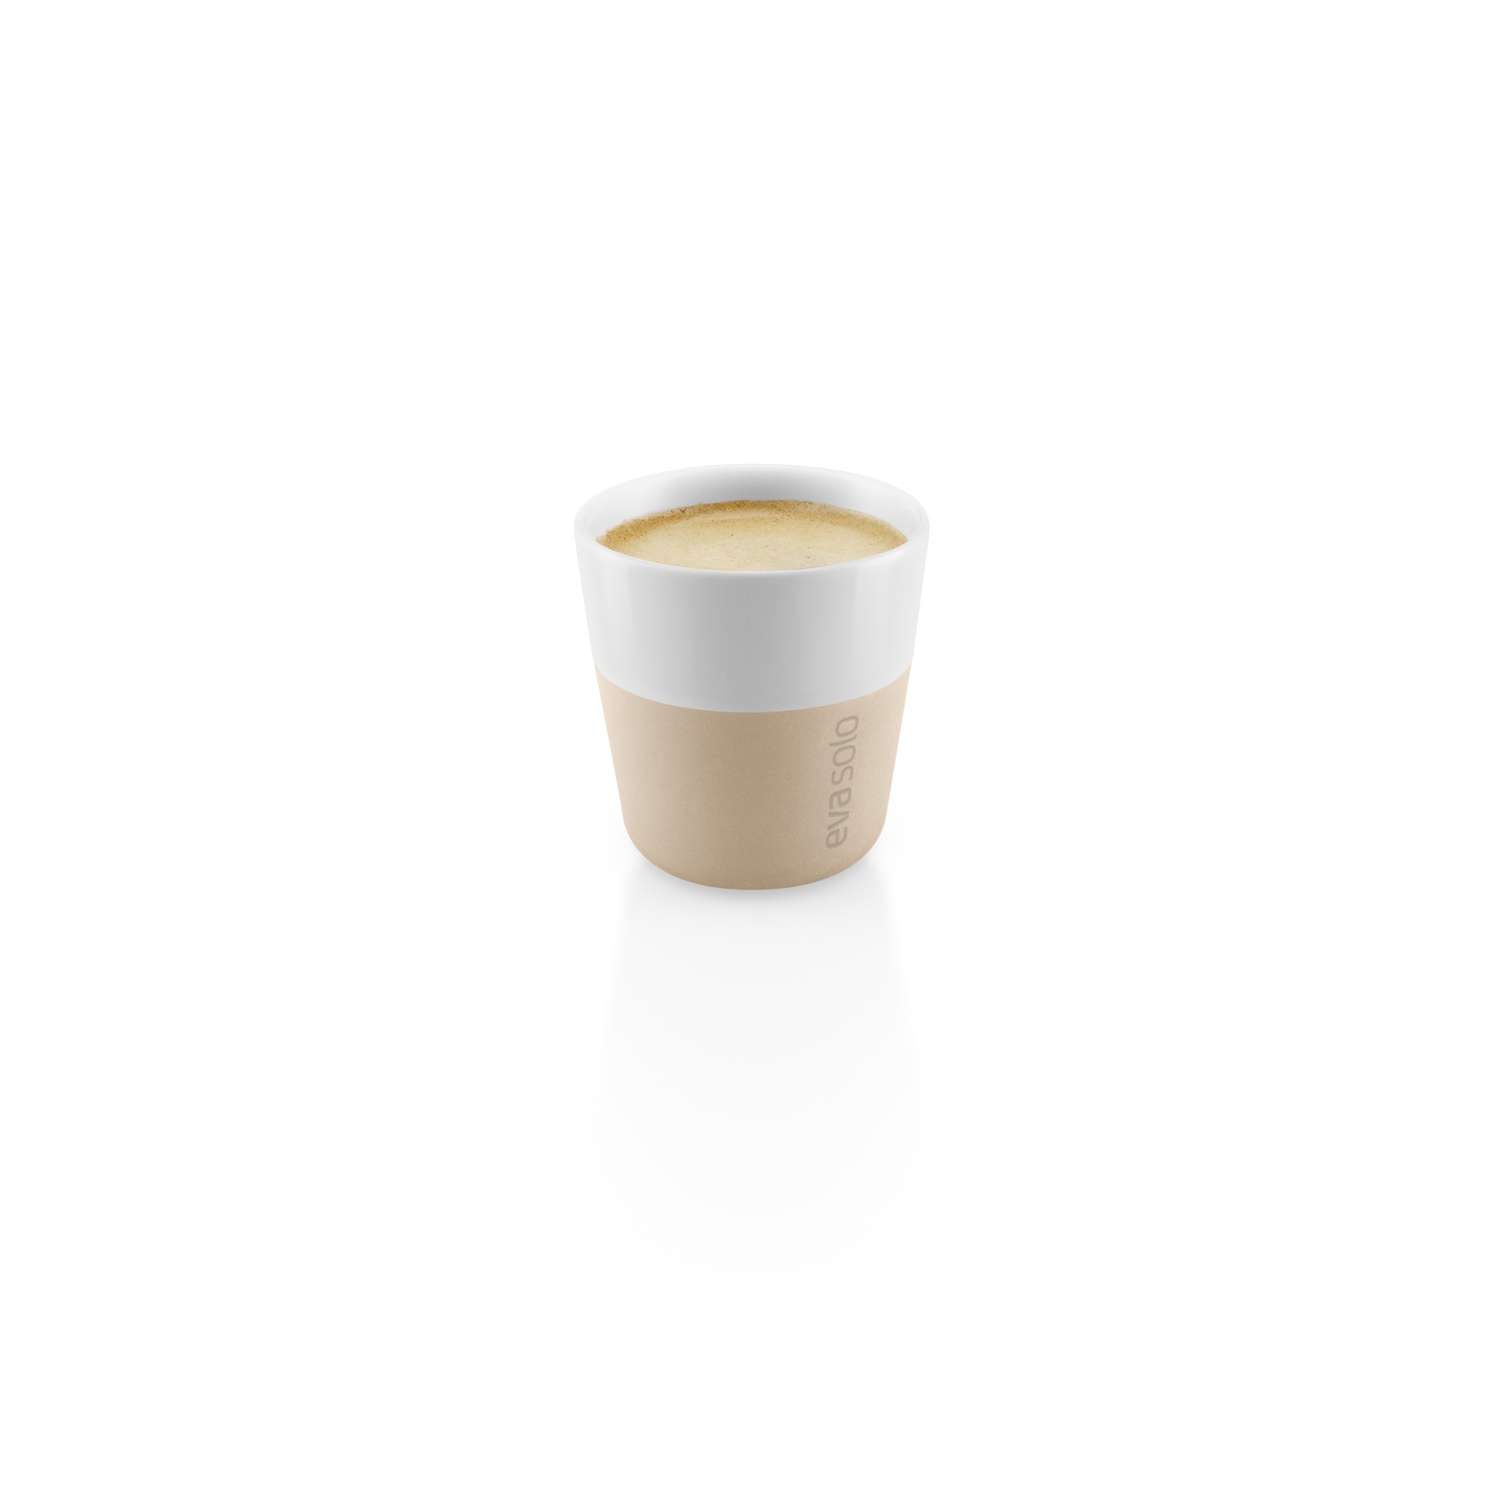 Eva Solo Espresso Tumbler - 2 pcs – The Above Normal